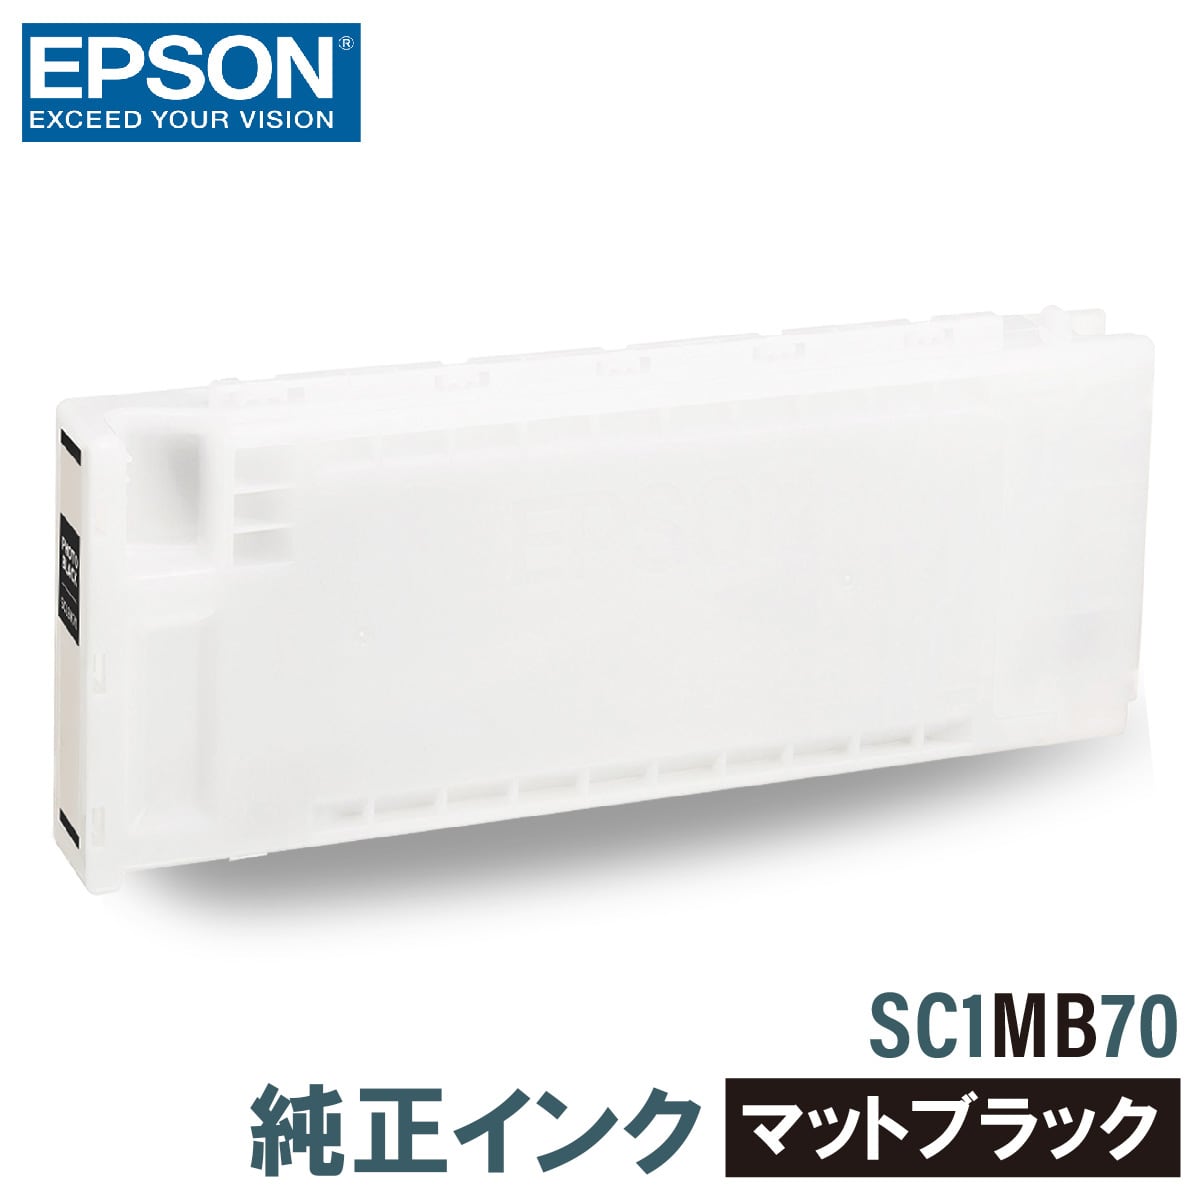 エプソン 純正インク EPSON SC1MB70 マットブラック 700ml 互換インク、ロール紙販売のPRINKS(プリンクス)